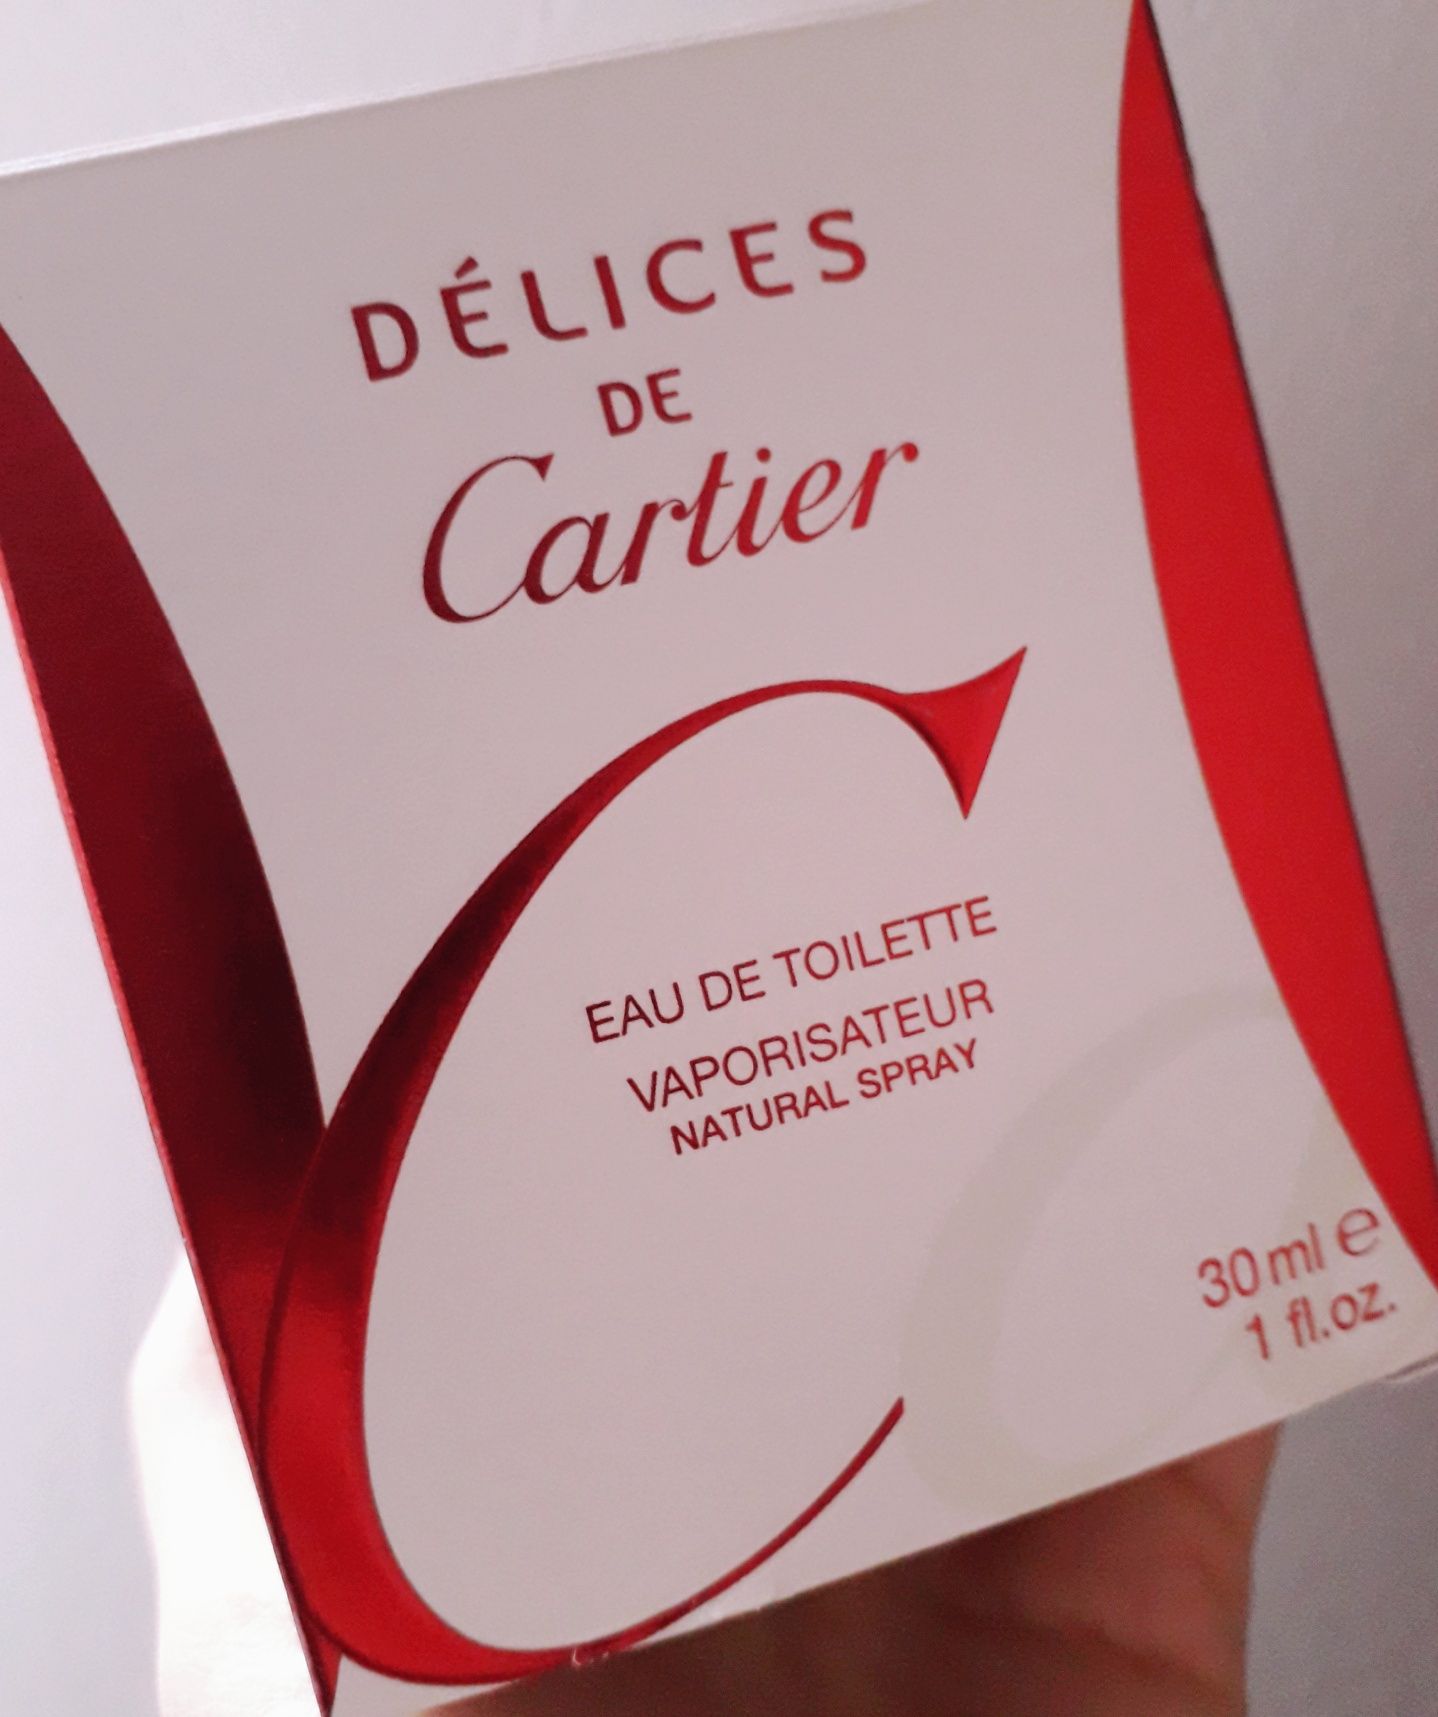 Delices de Cartier